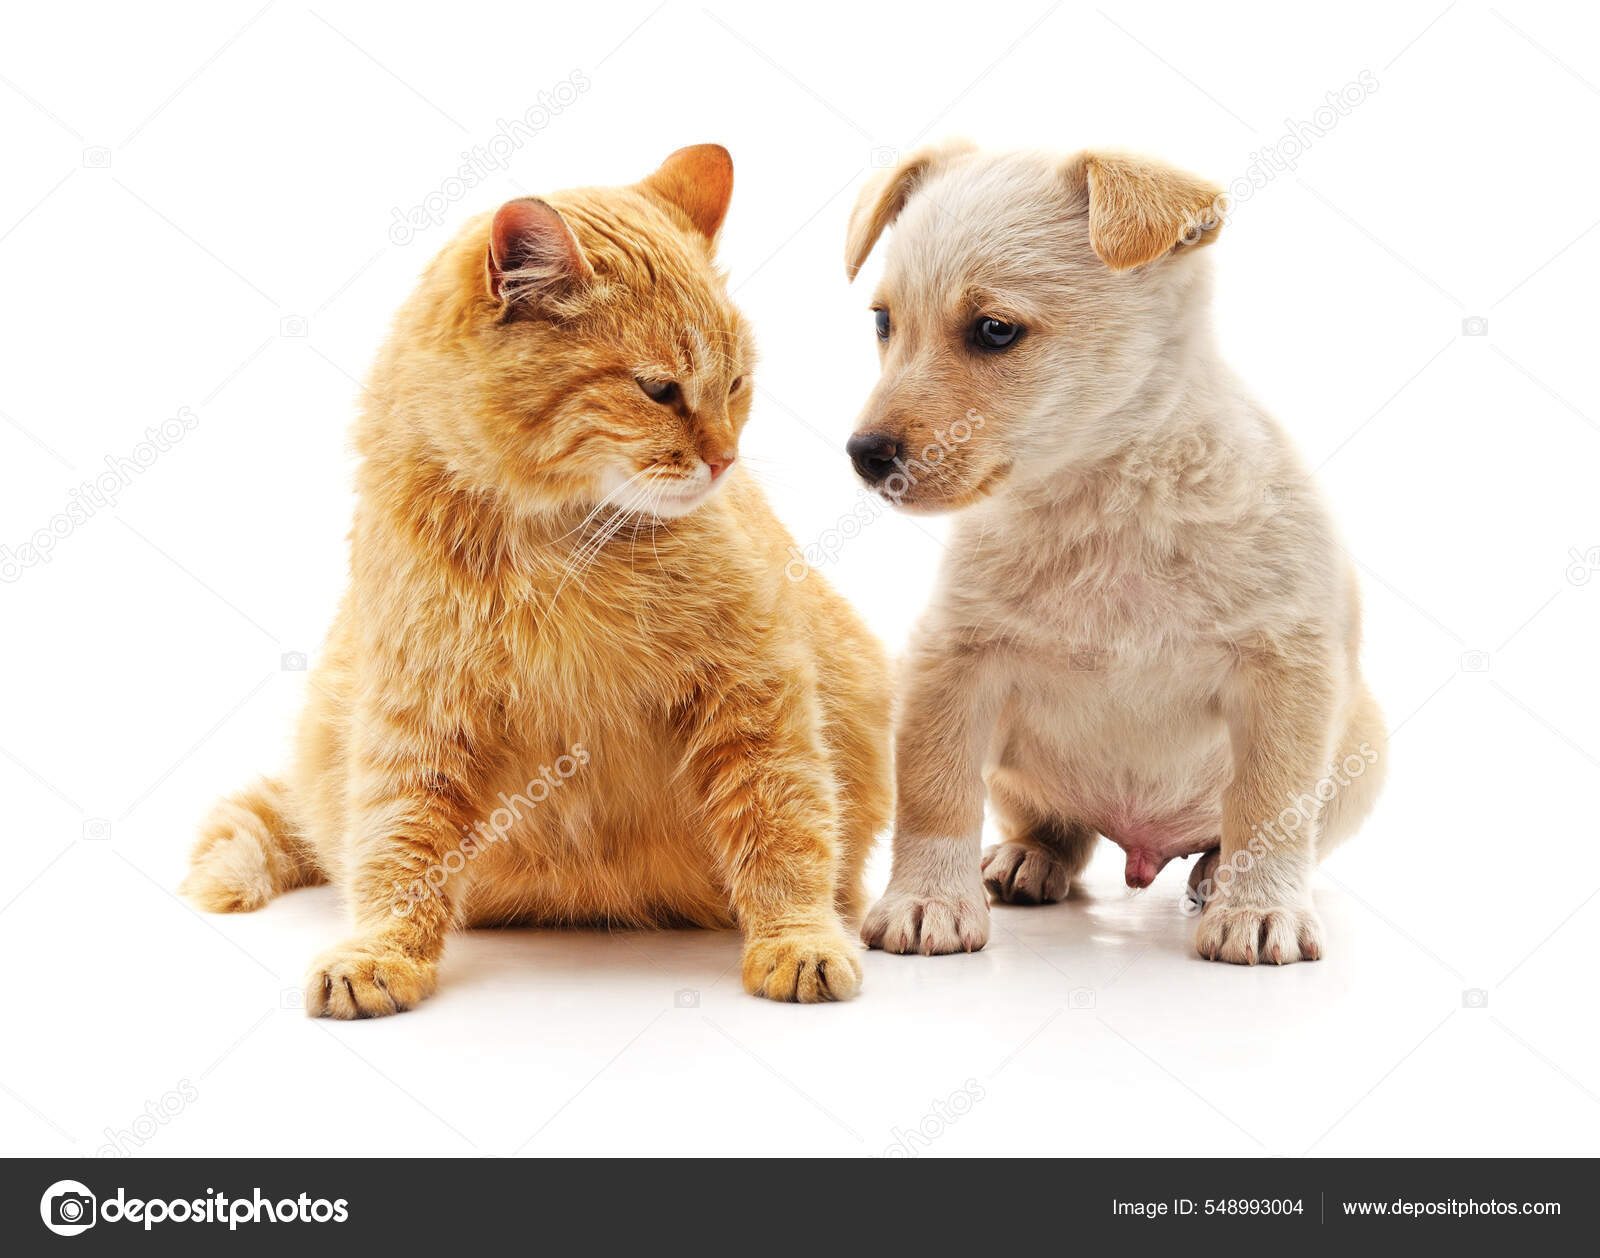 Stockfoto's van Puppy en rechtenvrije afbeeldingen van Puppy en kitten | Depositphotos